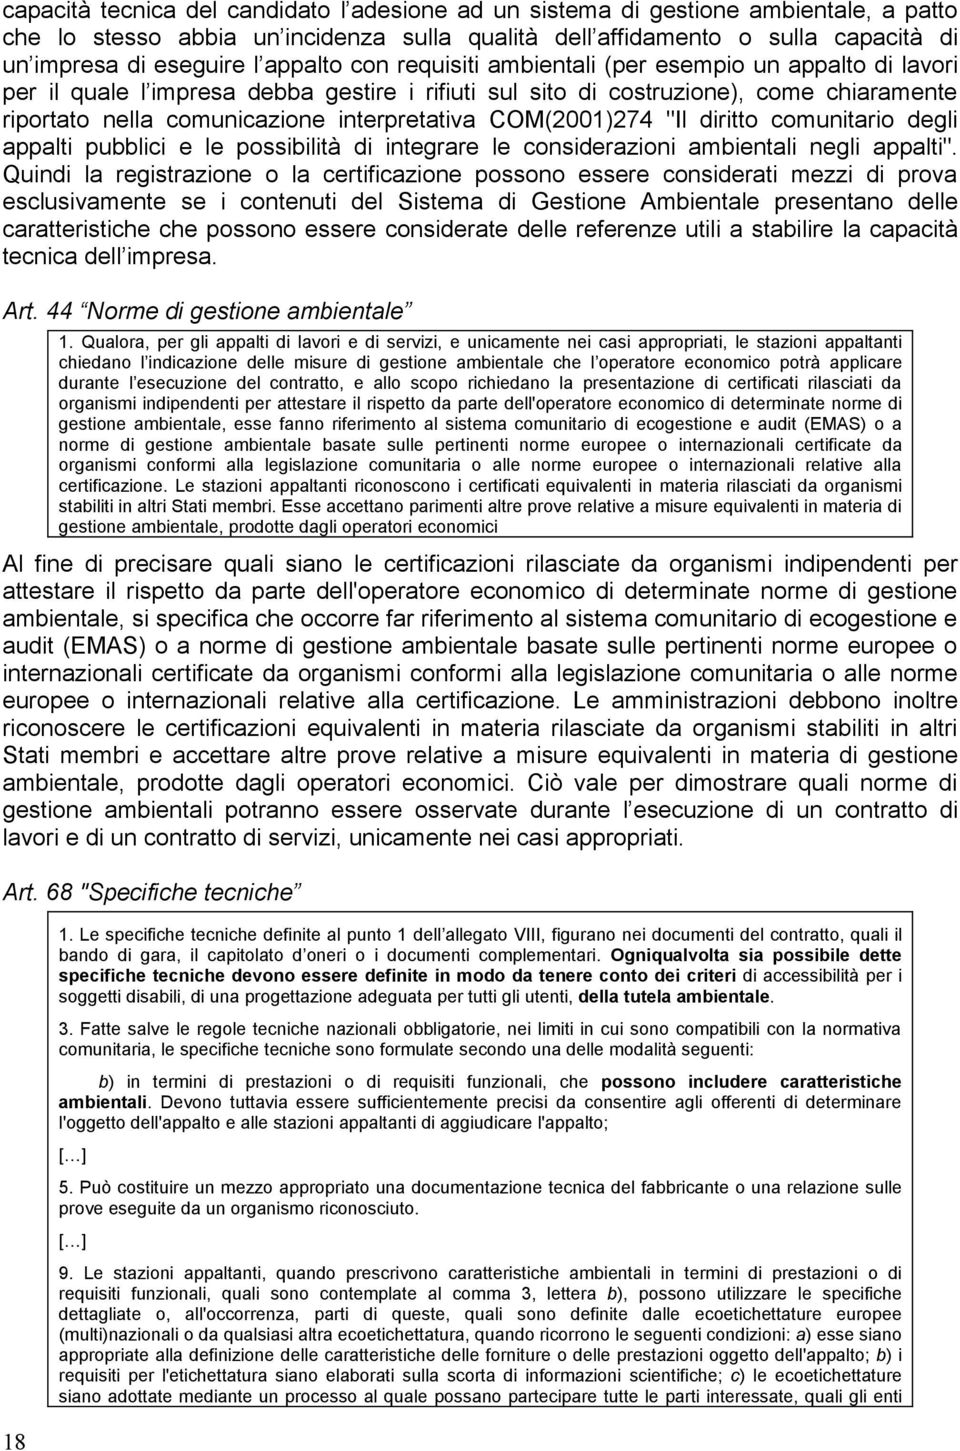 interpretativa COM(2001)274 "Il diritto comunitario degli appalti pubblici e le possibilità di integrare le considerazioni ambientali negli appalti".